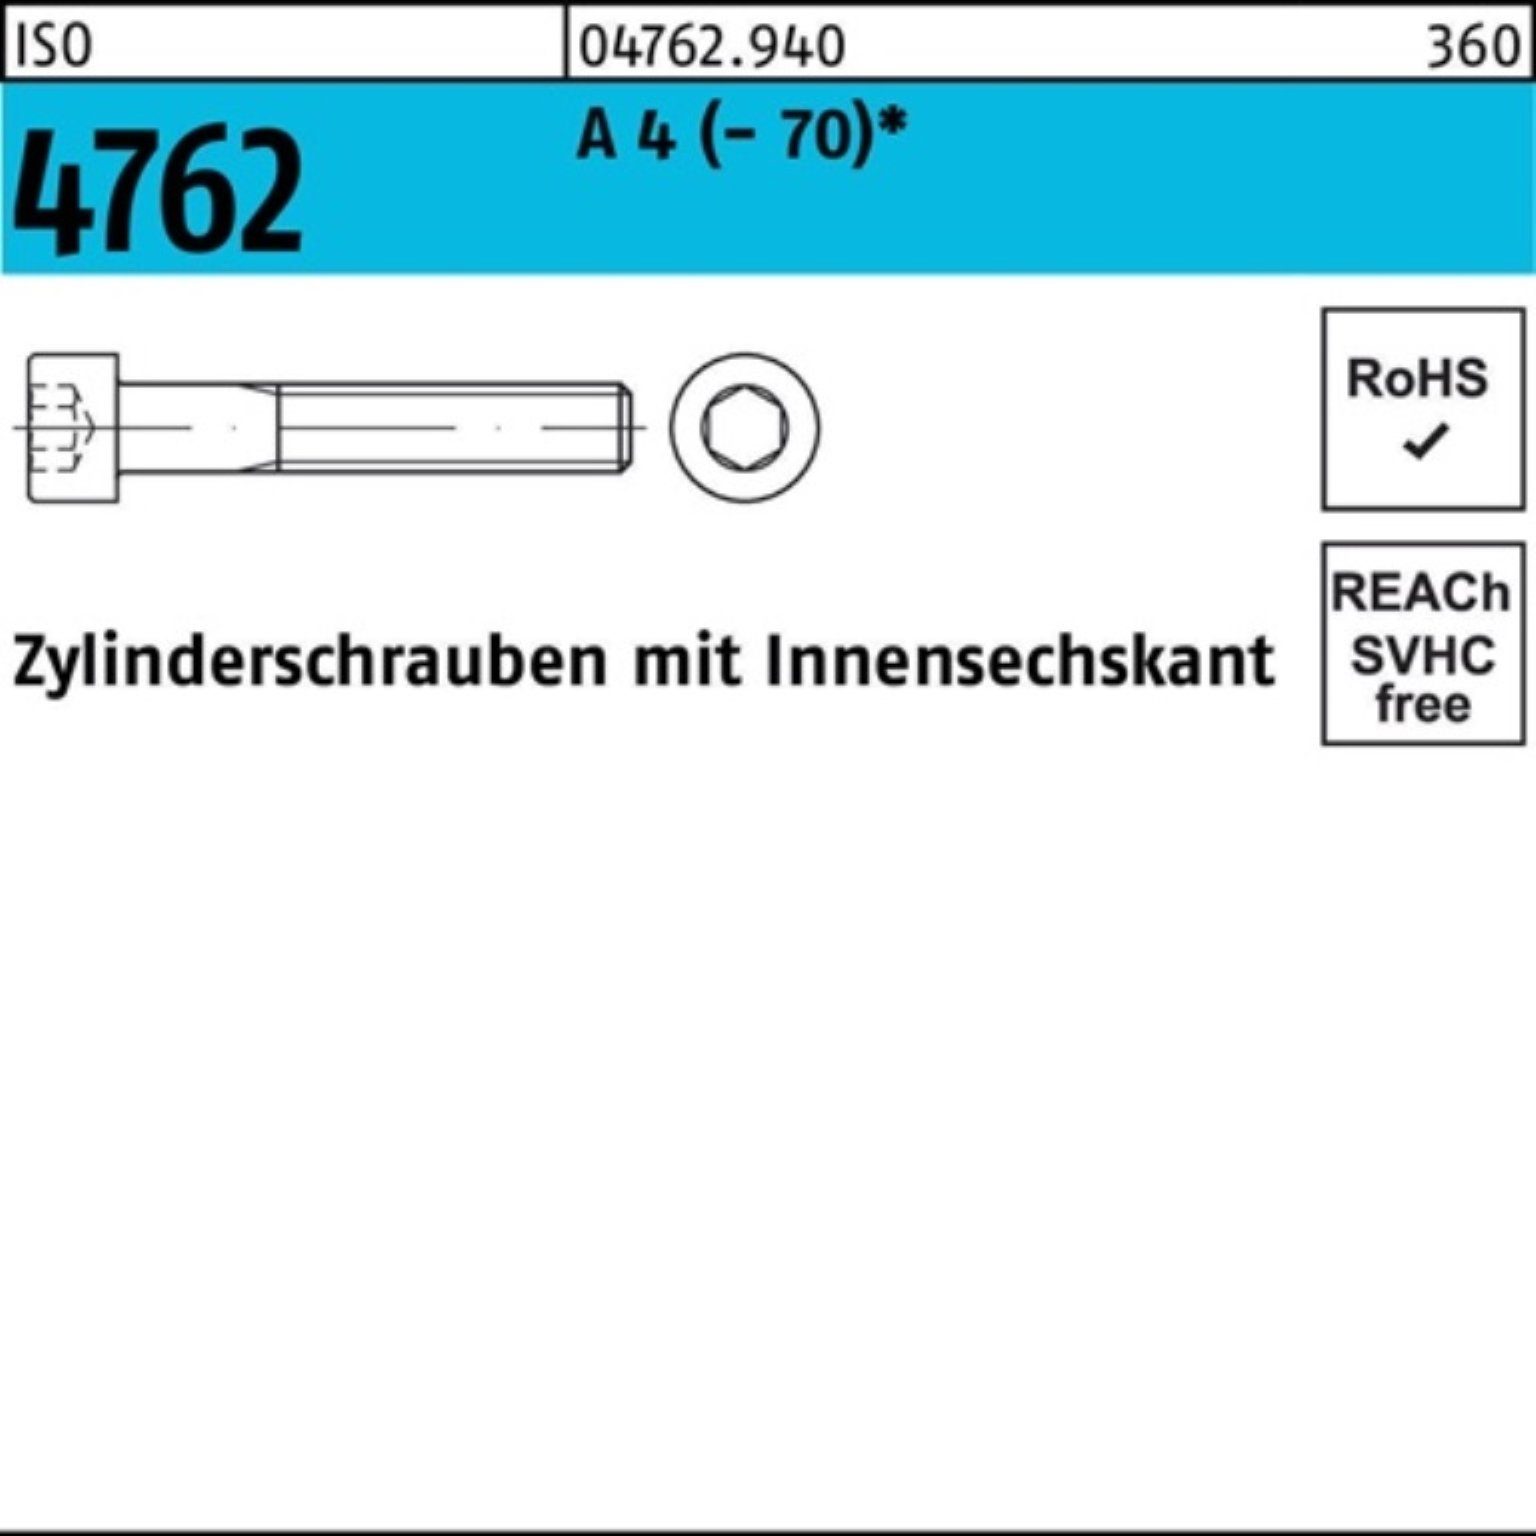 Reyher Pack Zylinderschraube S Innen-6kt (70) 4762 80 A M6x 4 Zylinderschraube 100er ISO 100